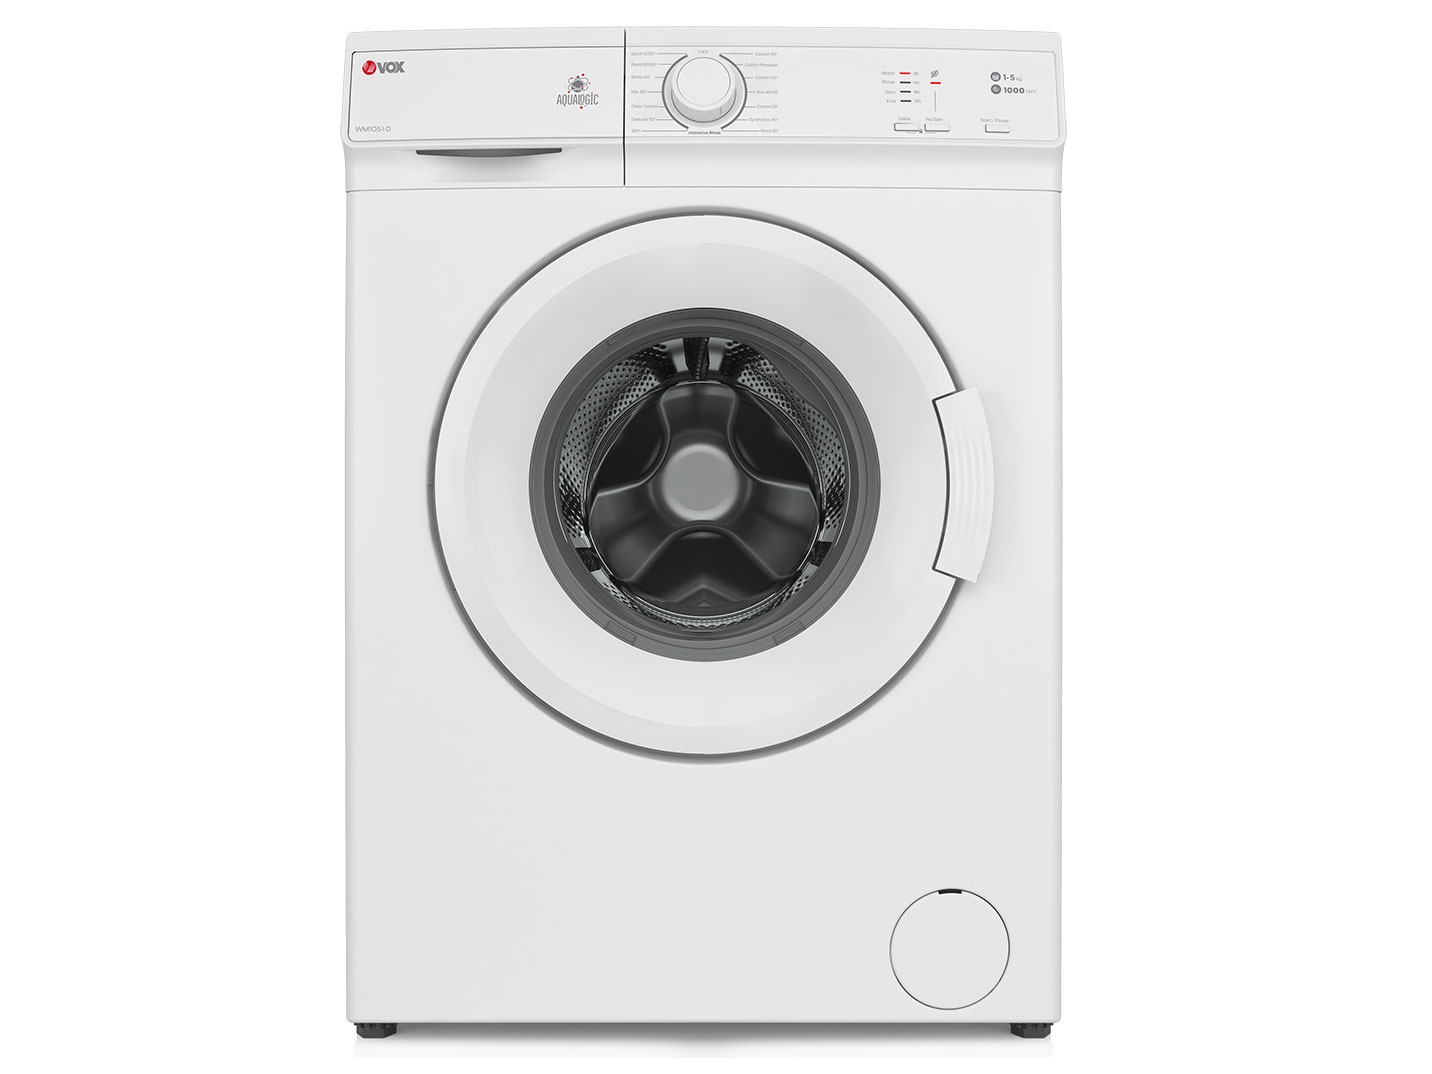 Vox masina za pranje vesa WM1051D 